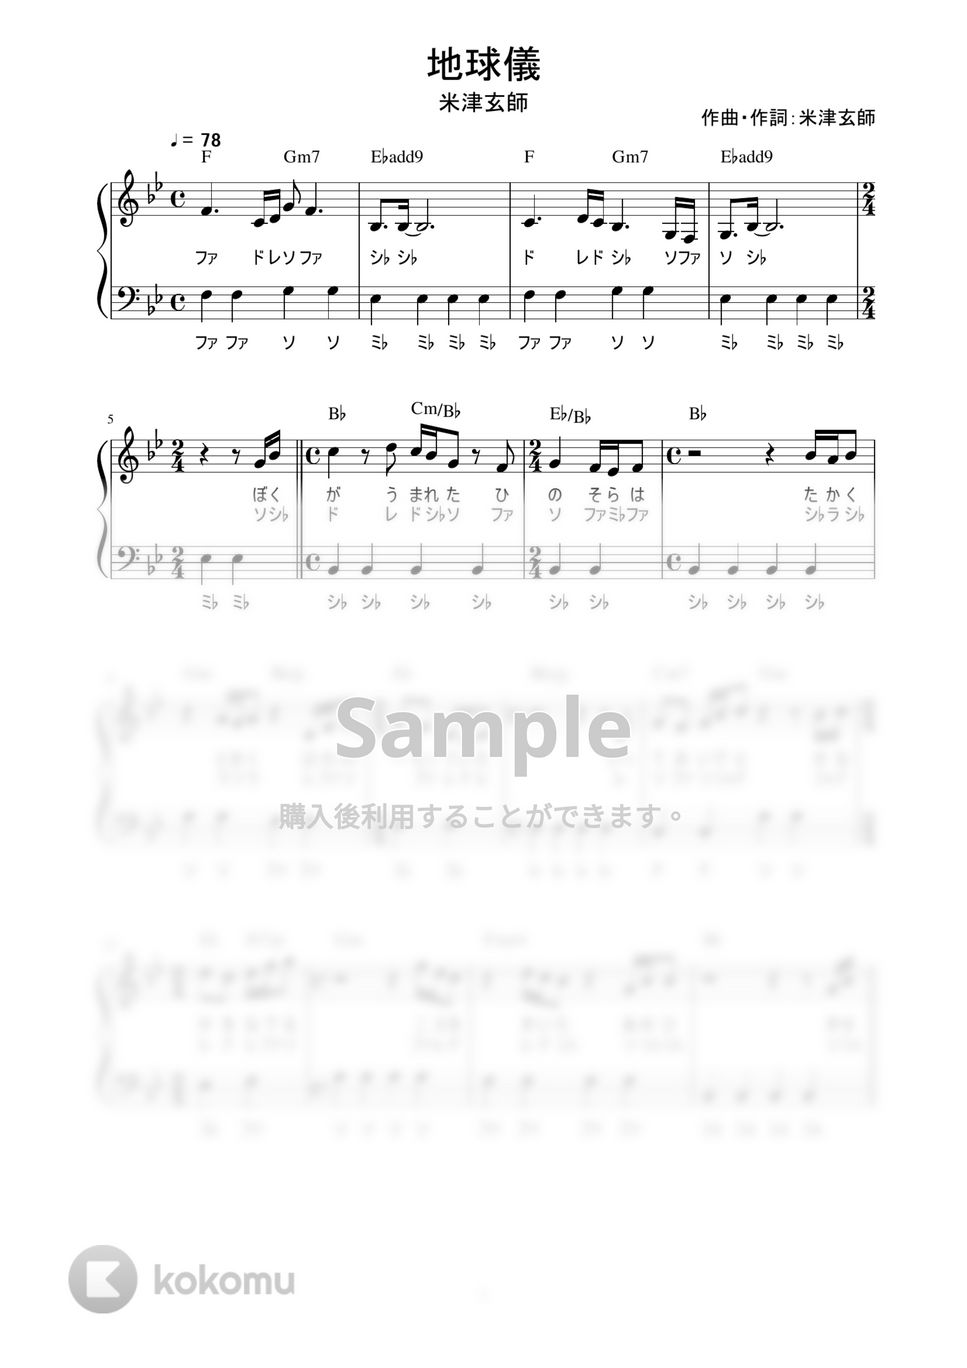 米津玄師 - 地球儀 (かんたん / 歌詞付き / ドレミ付き / 初心者) by piano.tokyo